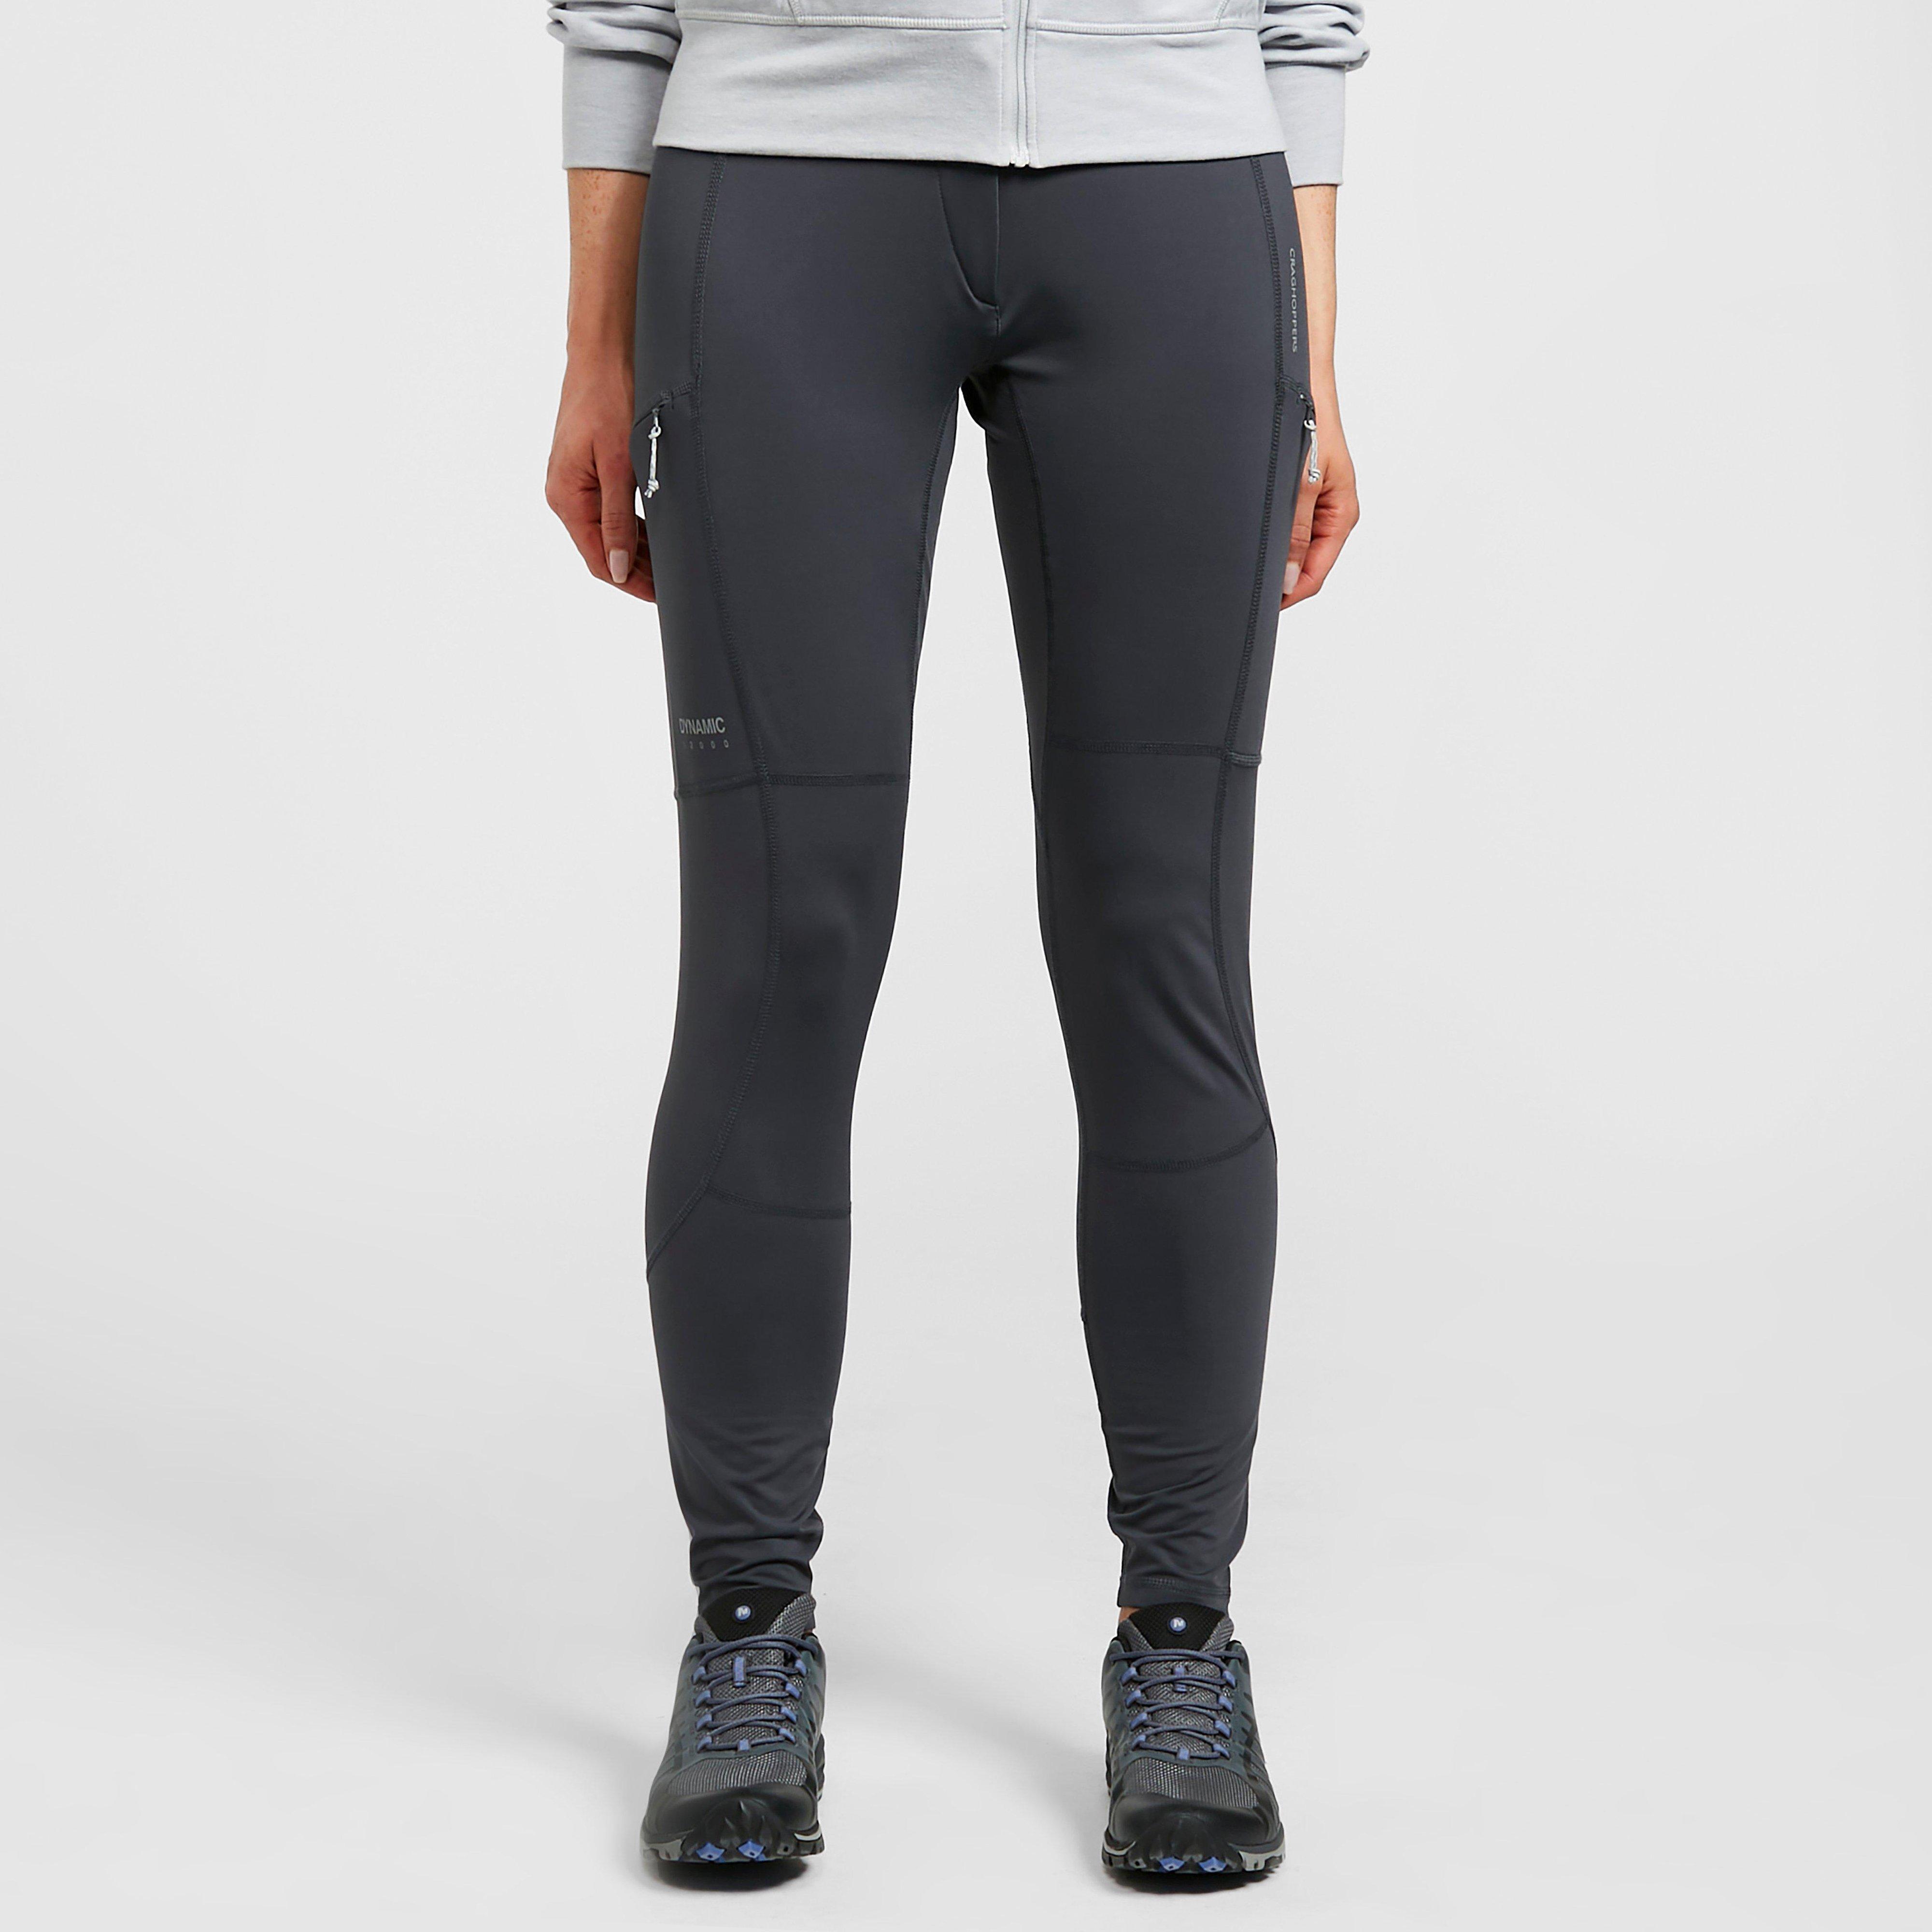 Craghoppers Womens Dynamic Trousers - Grey/grey  Grey/grey